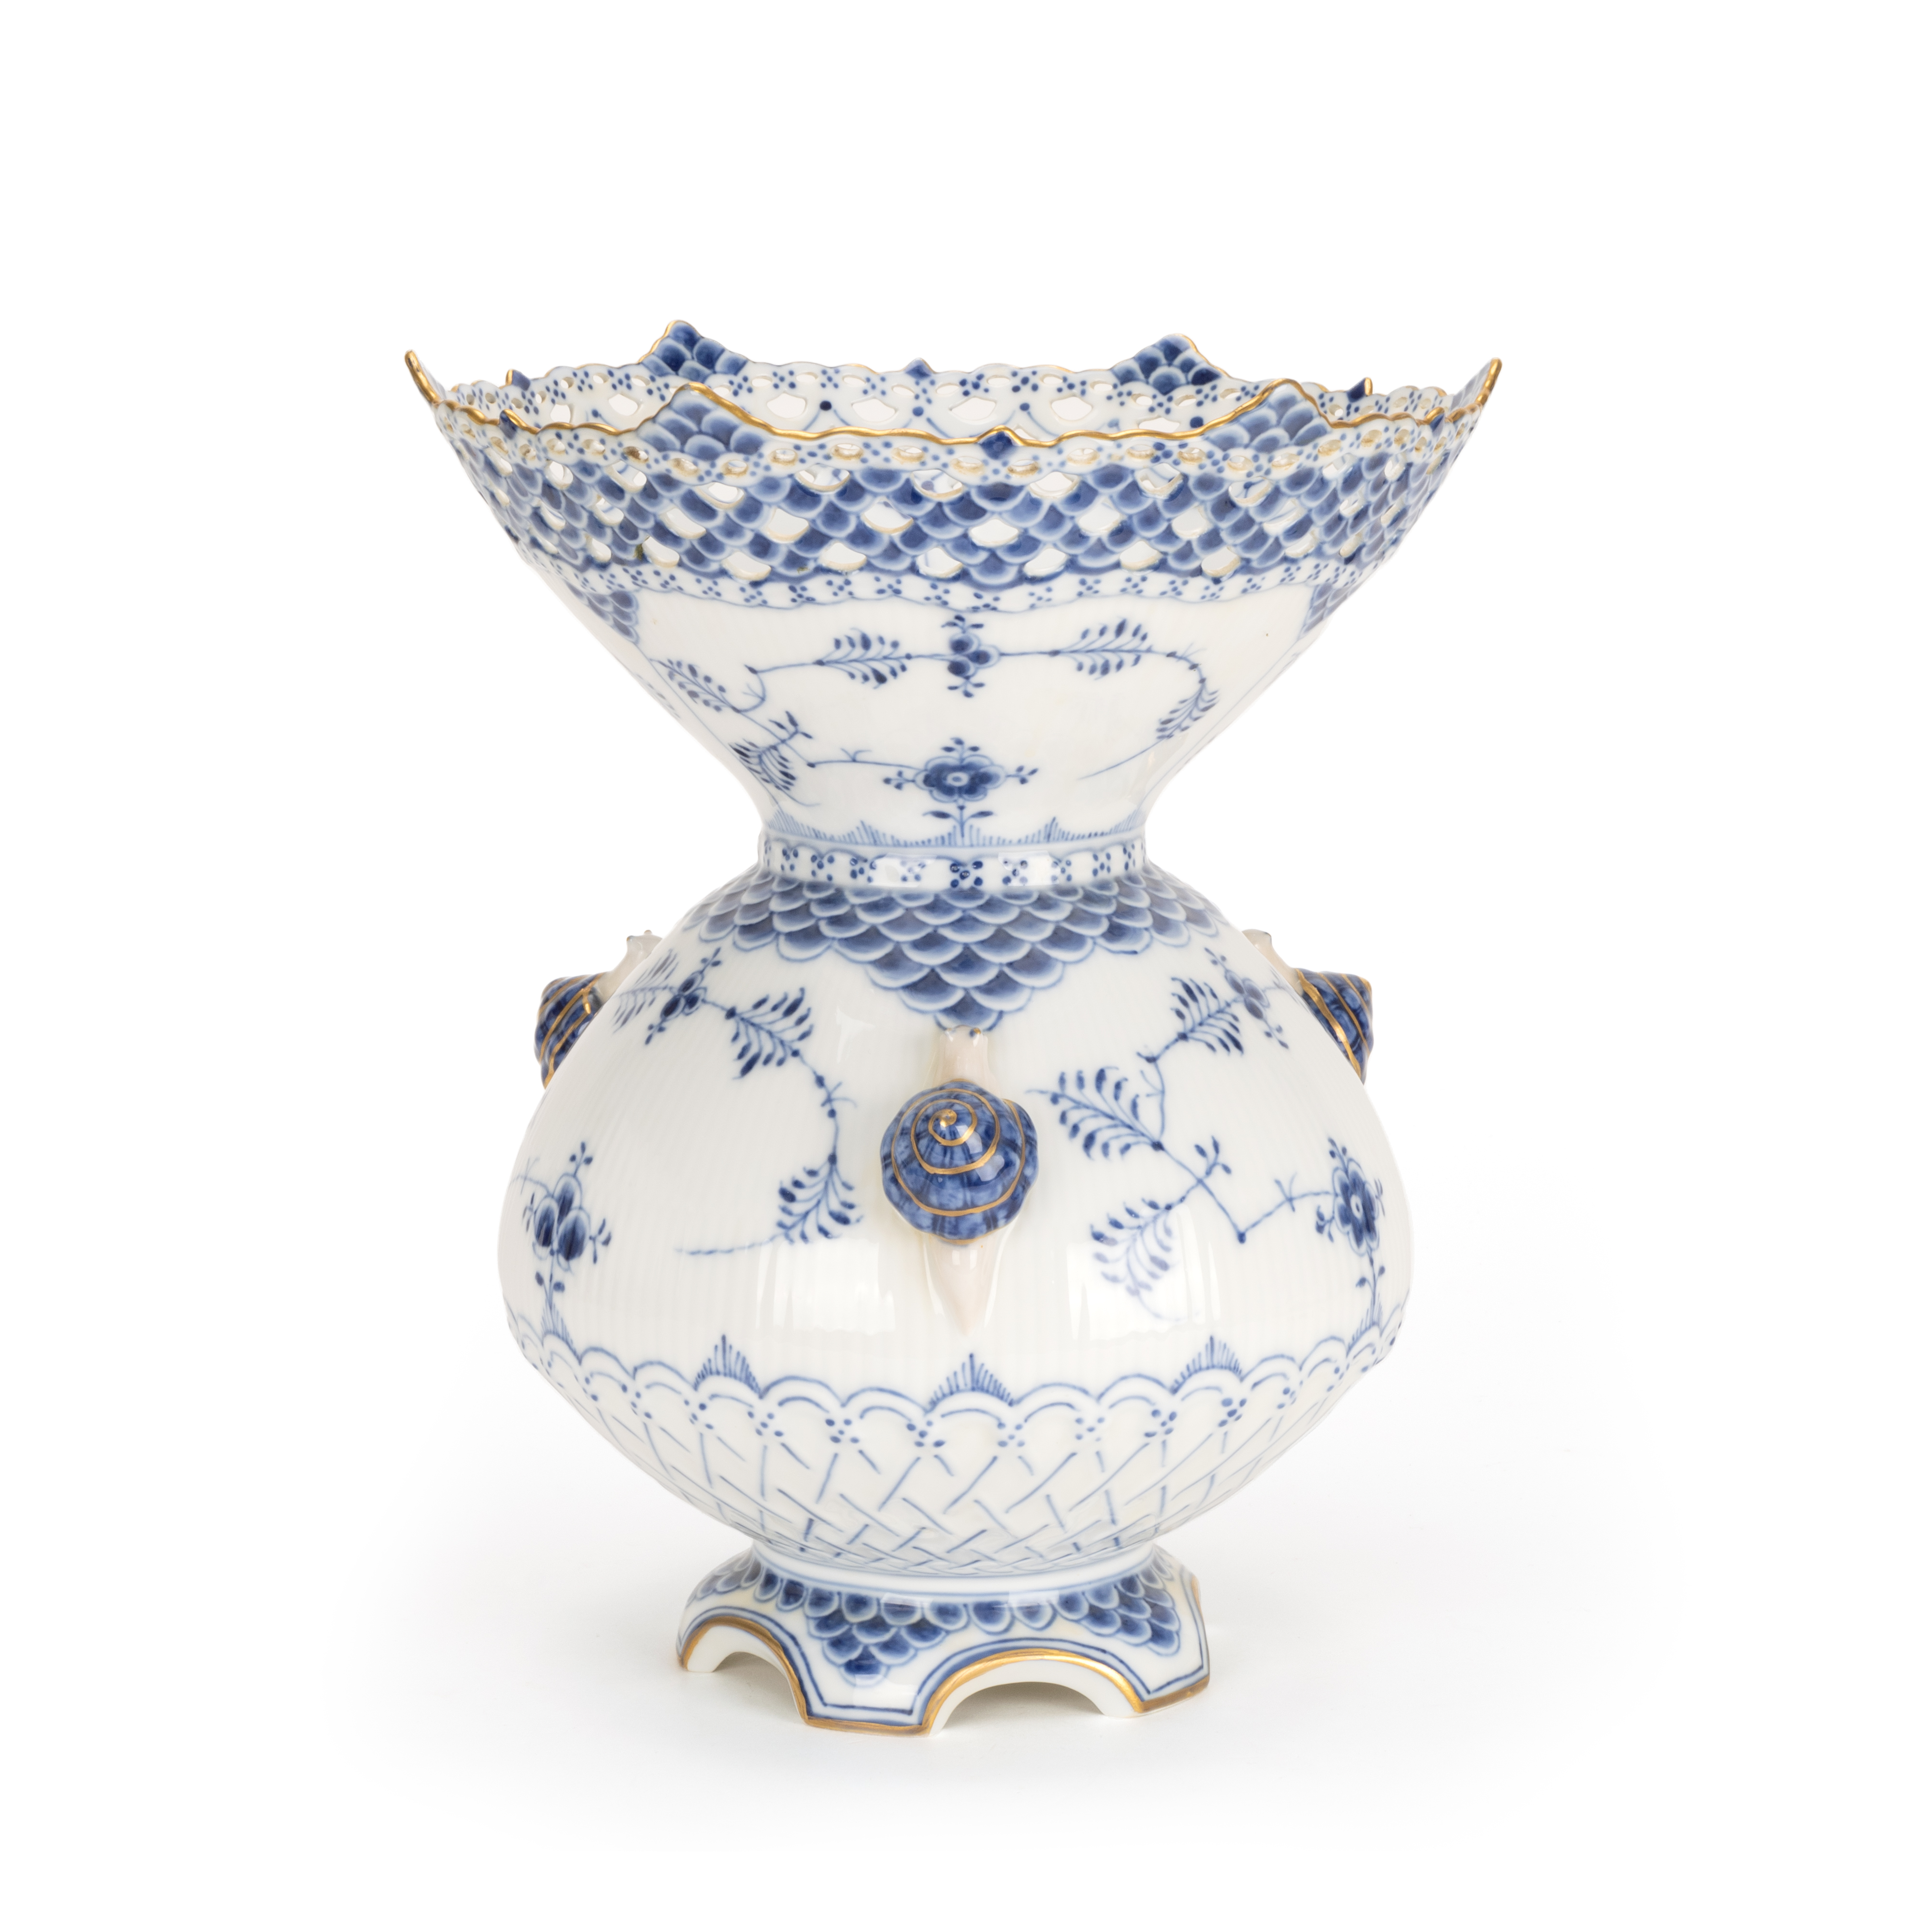 Royal Copenhagen große Vase 'Musselmalet' mit Schnecken - Bild 2 aus 4